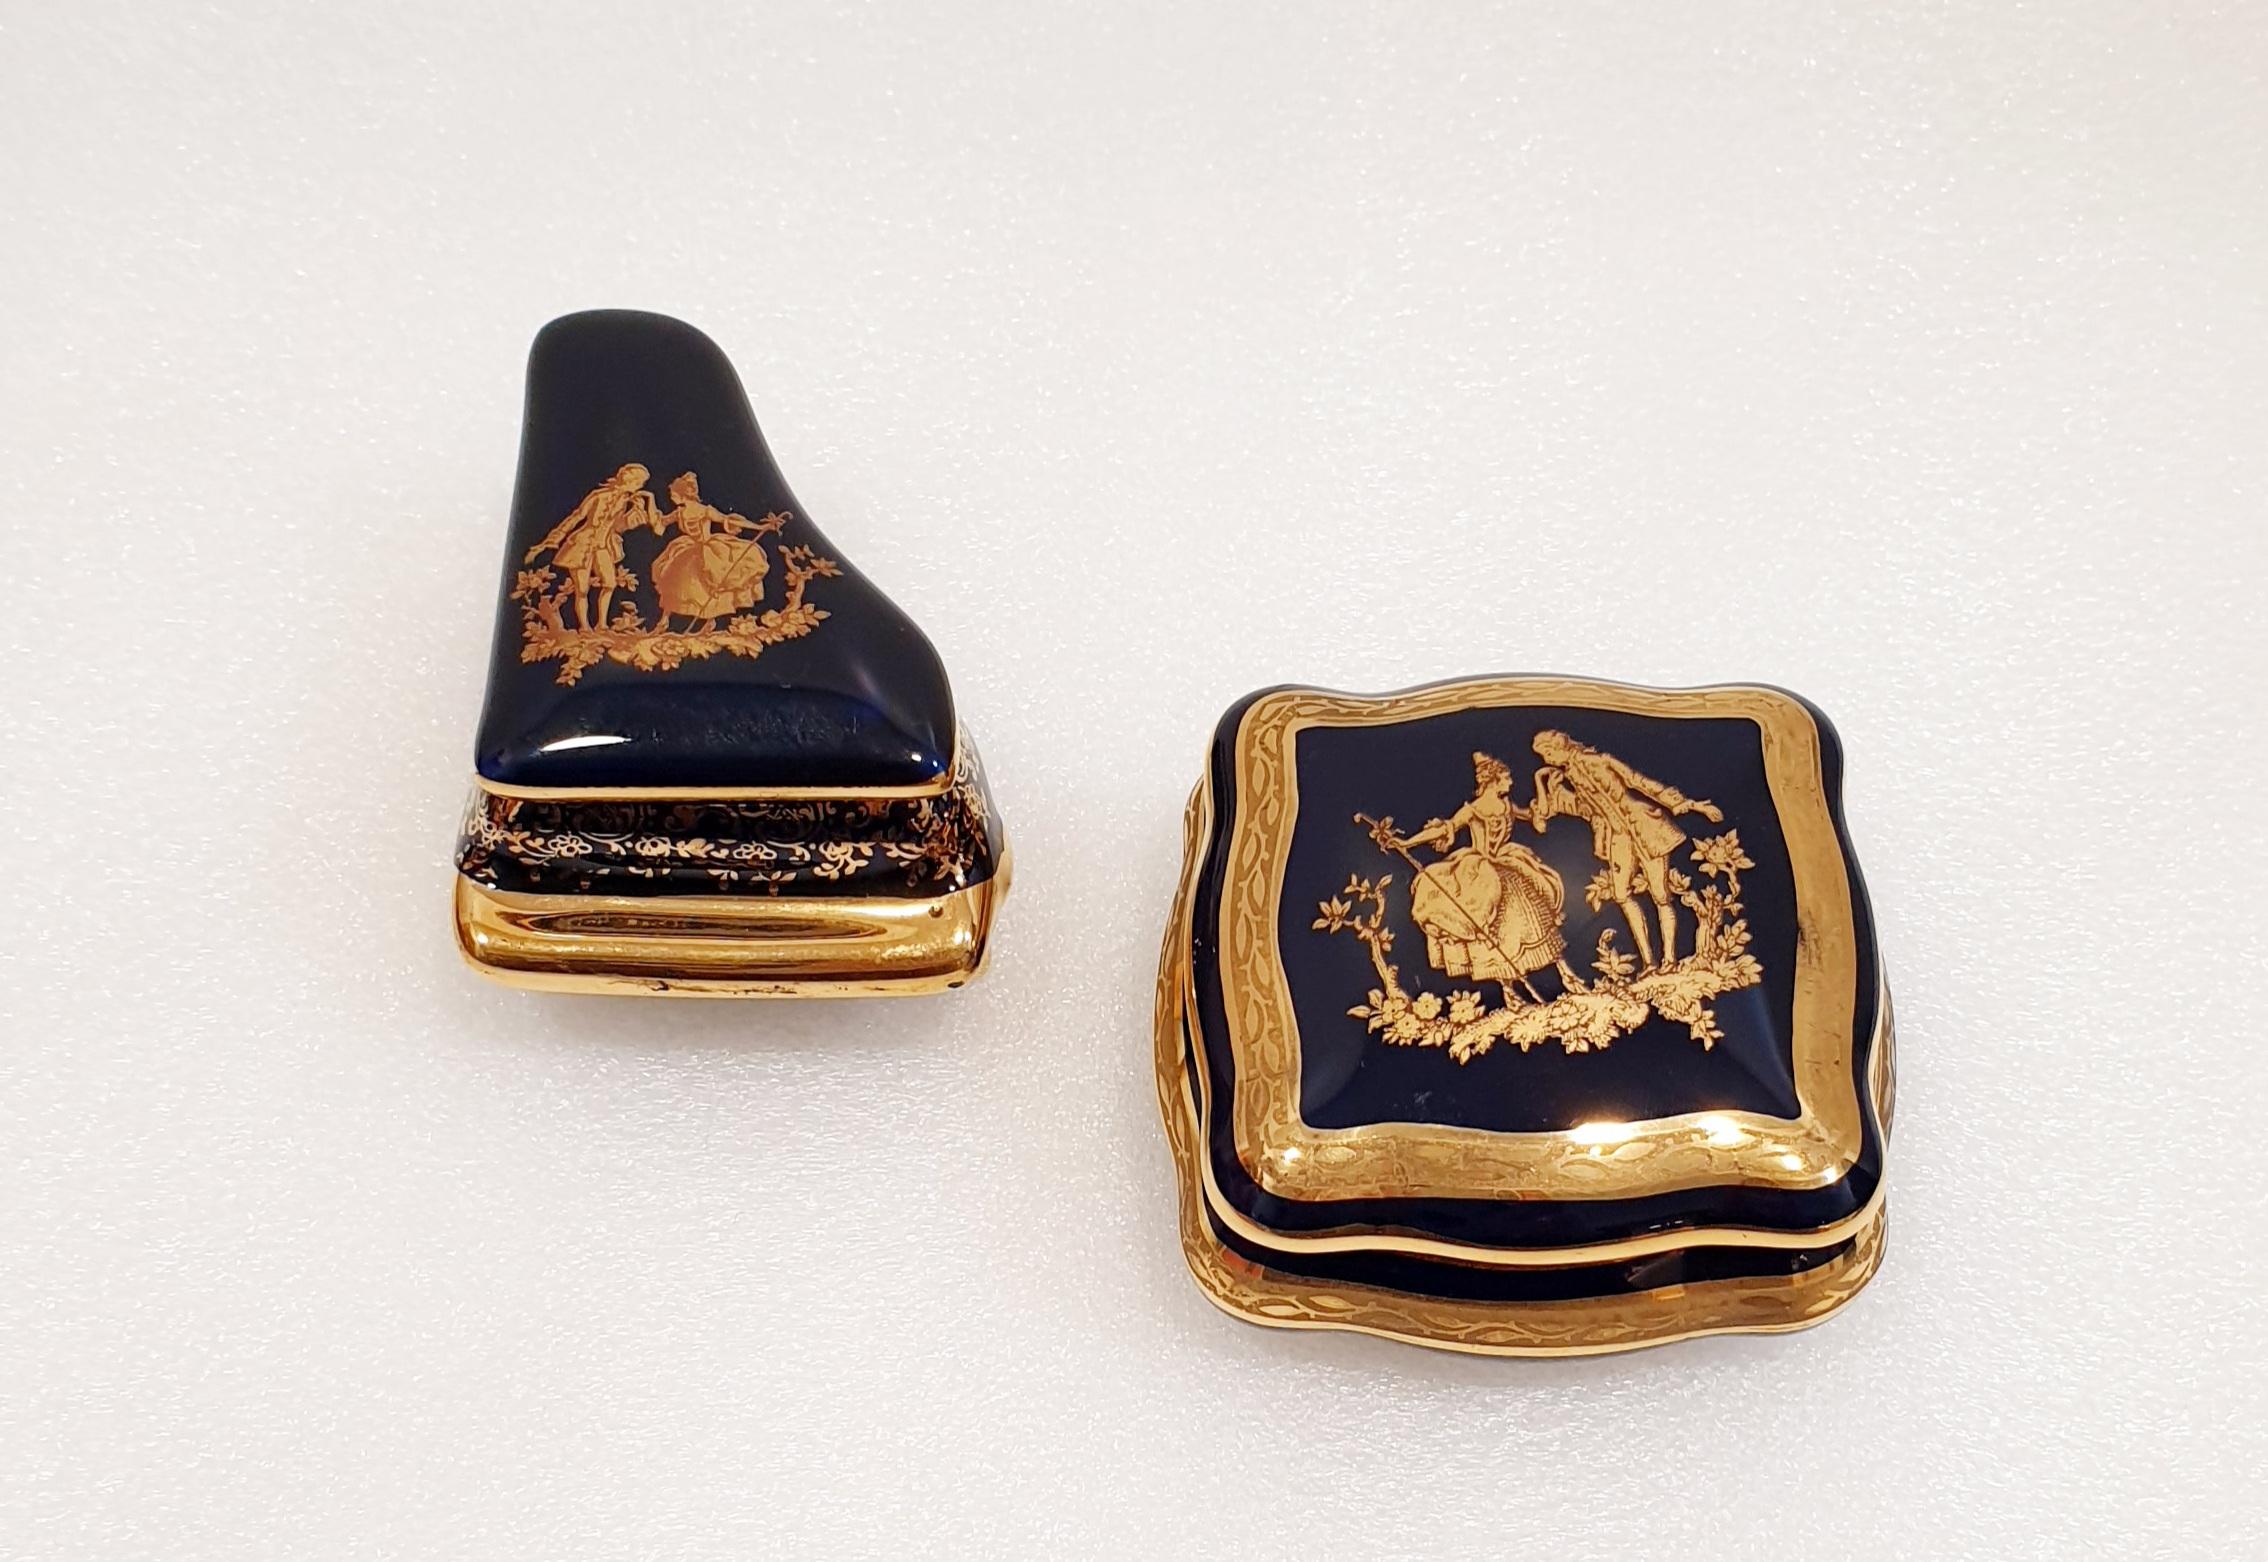 Elegant vintage Limoges 22-karat gold trinket jewelry boxes. 
French vintage Limoges porcelain in cobalt royal blue with fine gold decor.
Marked on base as “Limoges France